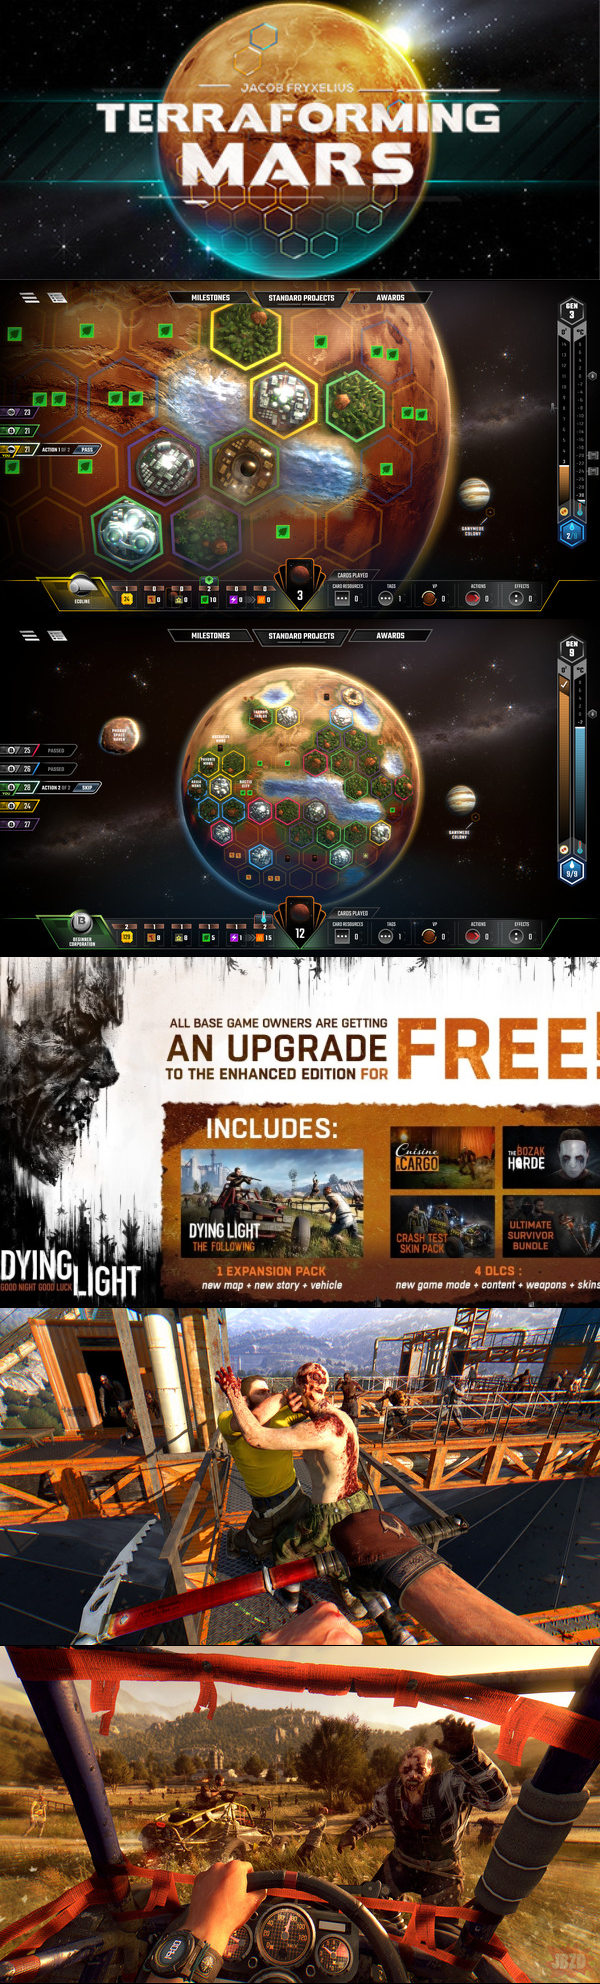 Terraforming Mars za darmo w Free Games Store oraz Dying Light The Following Enhanced Edition za darmo dla posiadaczy podstawowej wersji gry